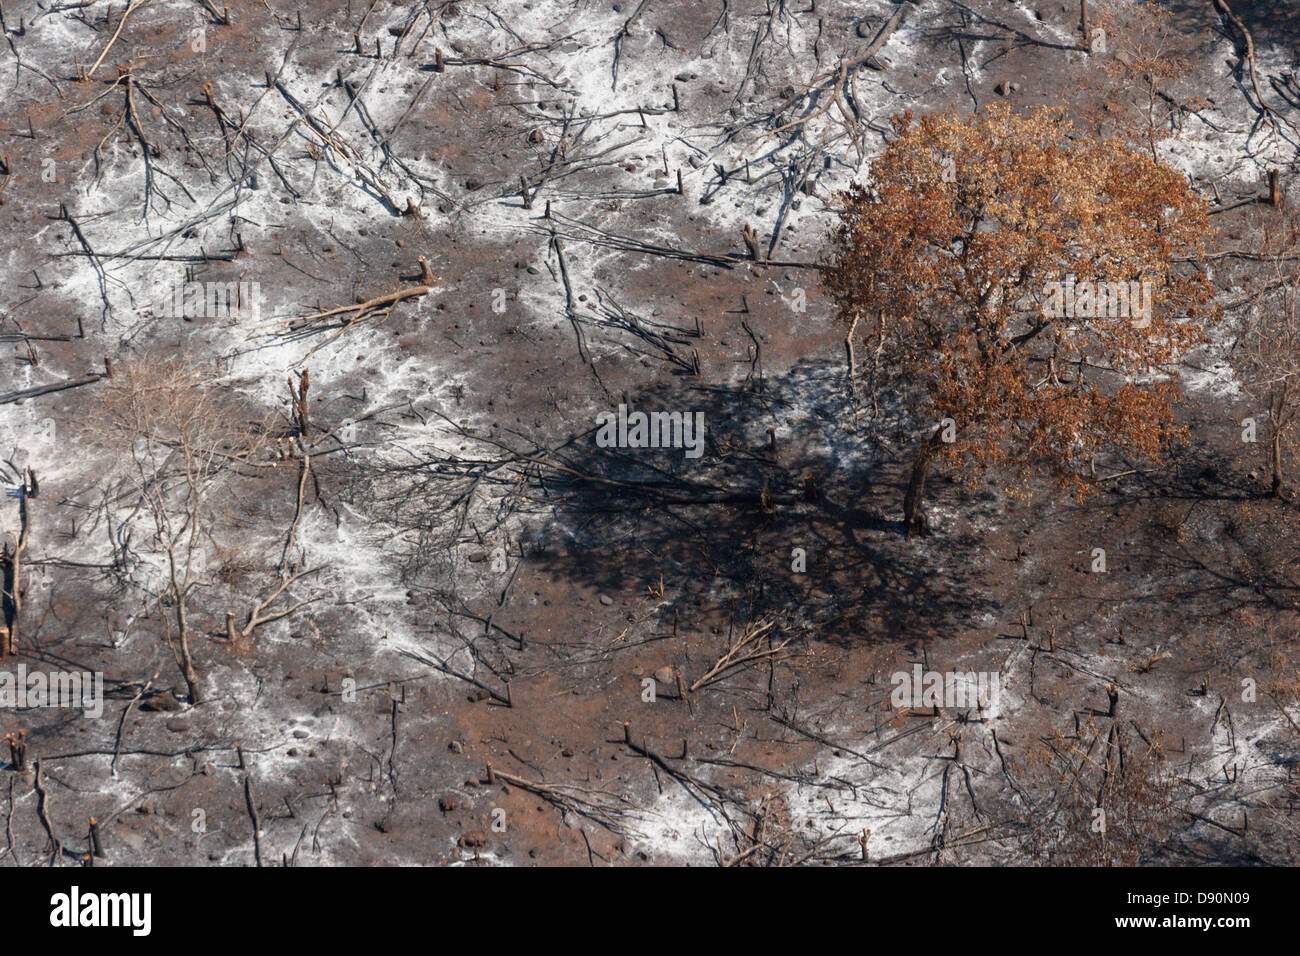 Tierra arrasada la quema estacional el desmonte de bosques de África Guinea Foto de stock